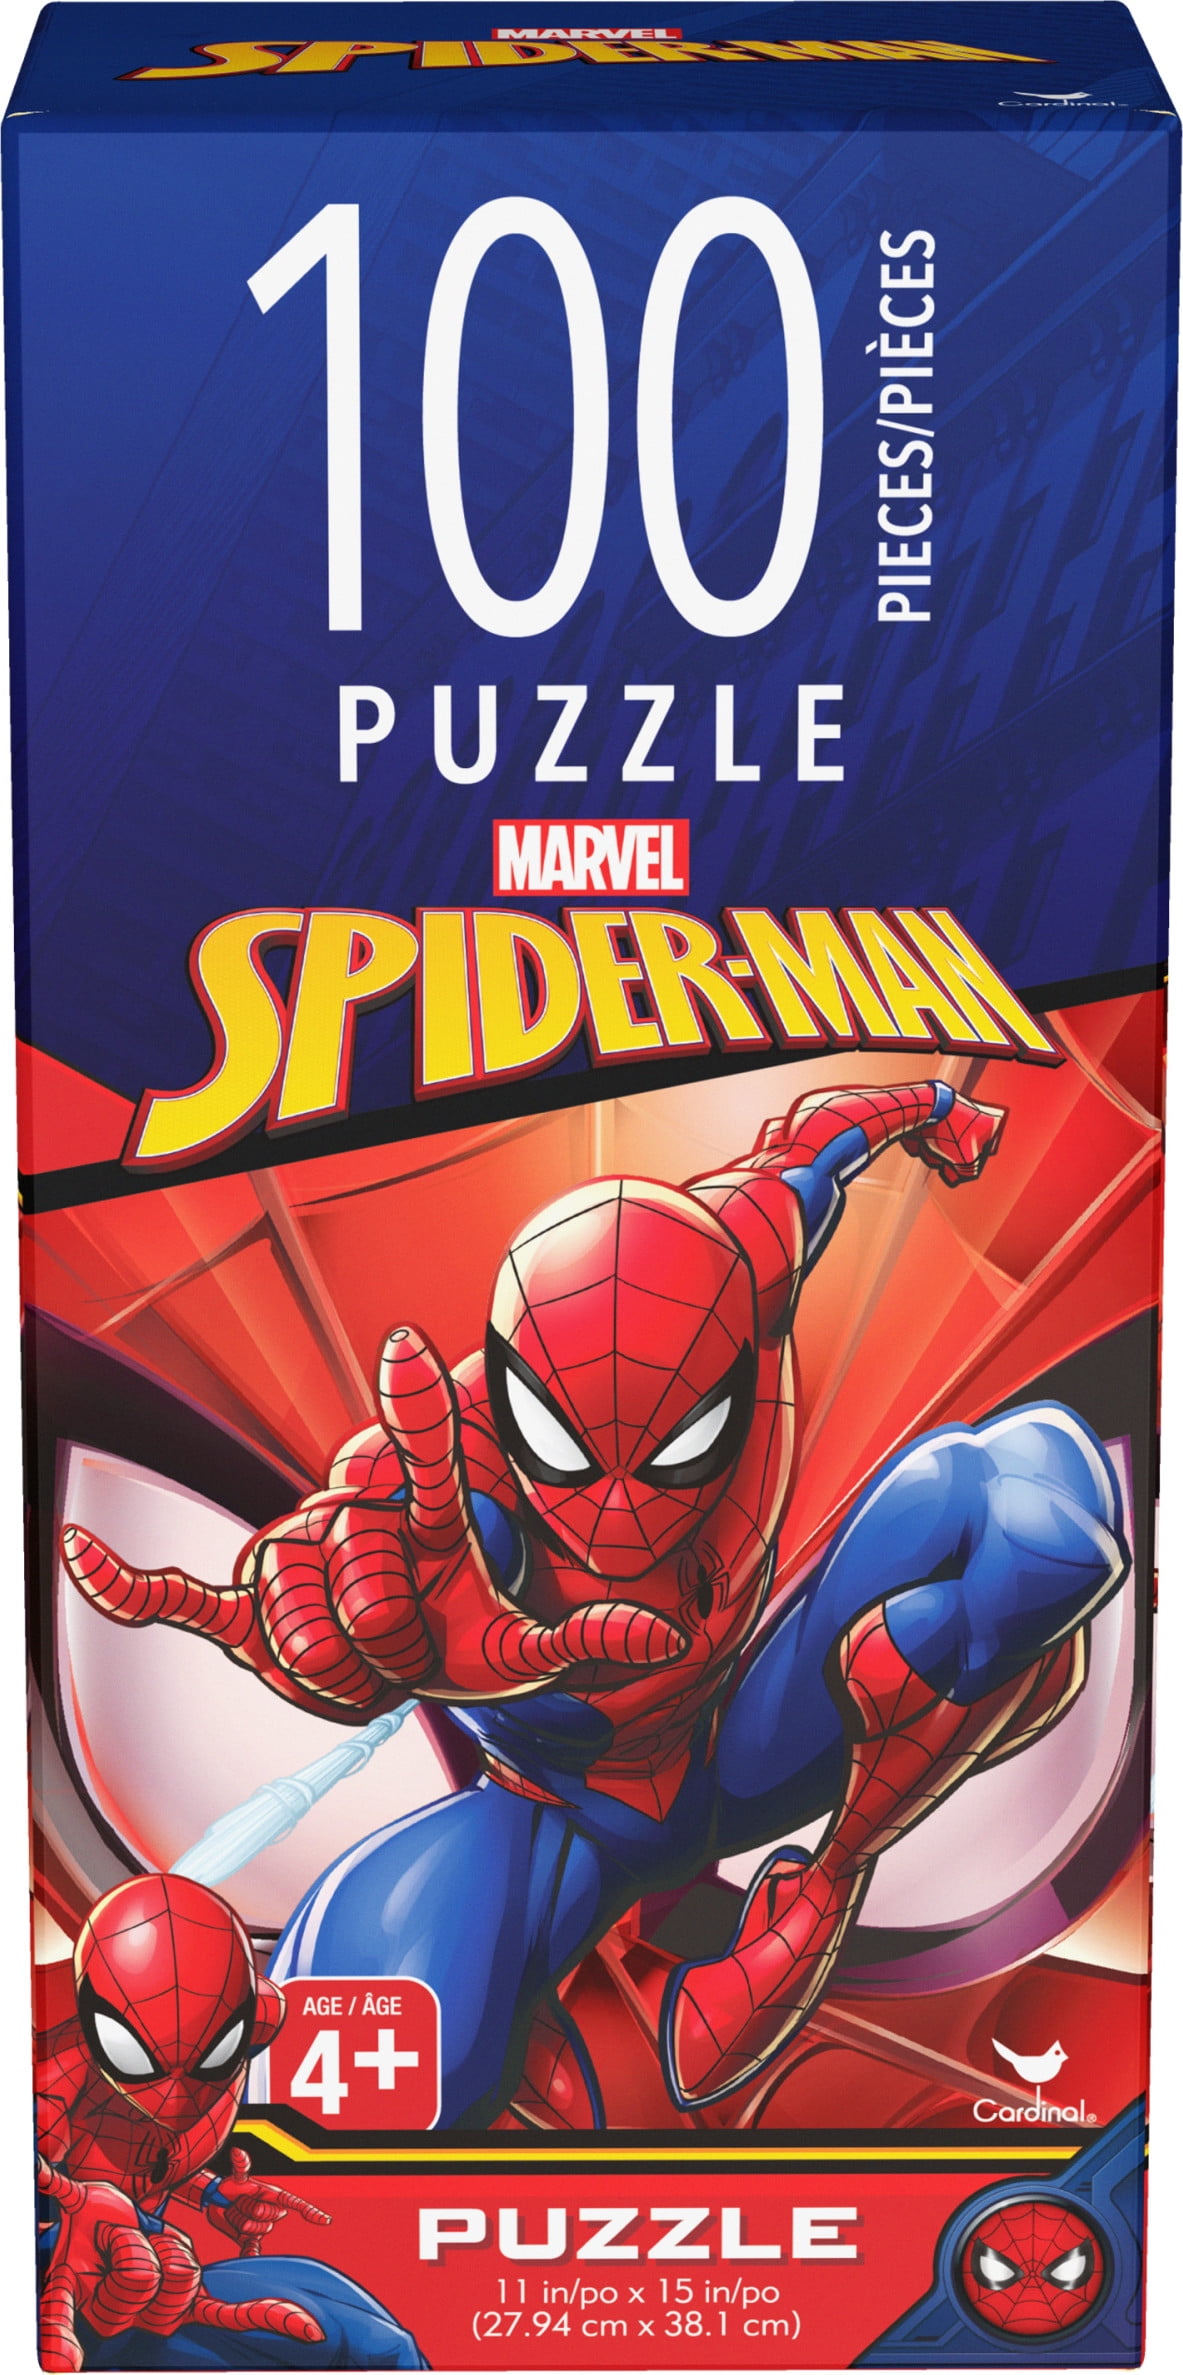 2 Kids Puzzles Batman 100 Piece Puzzle And Spider-Man 100 Piece Puzzle. 